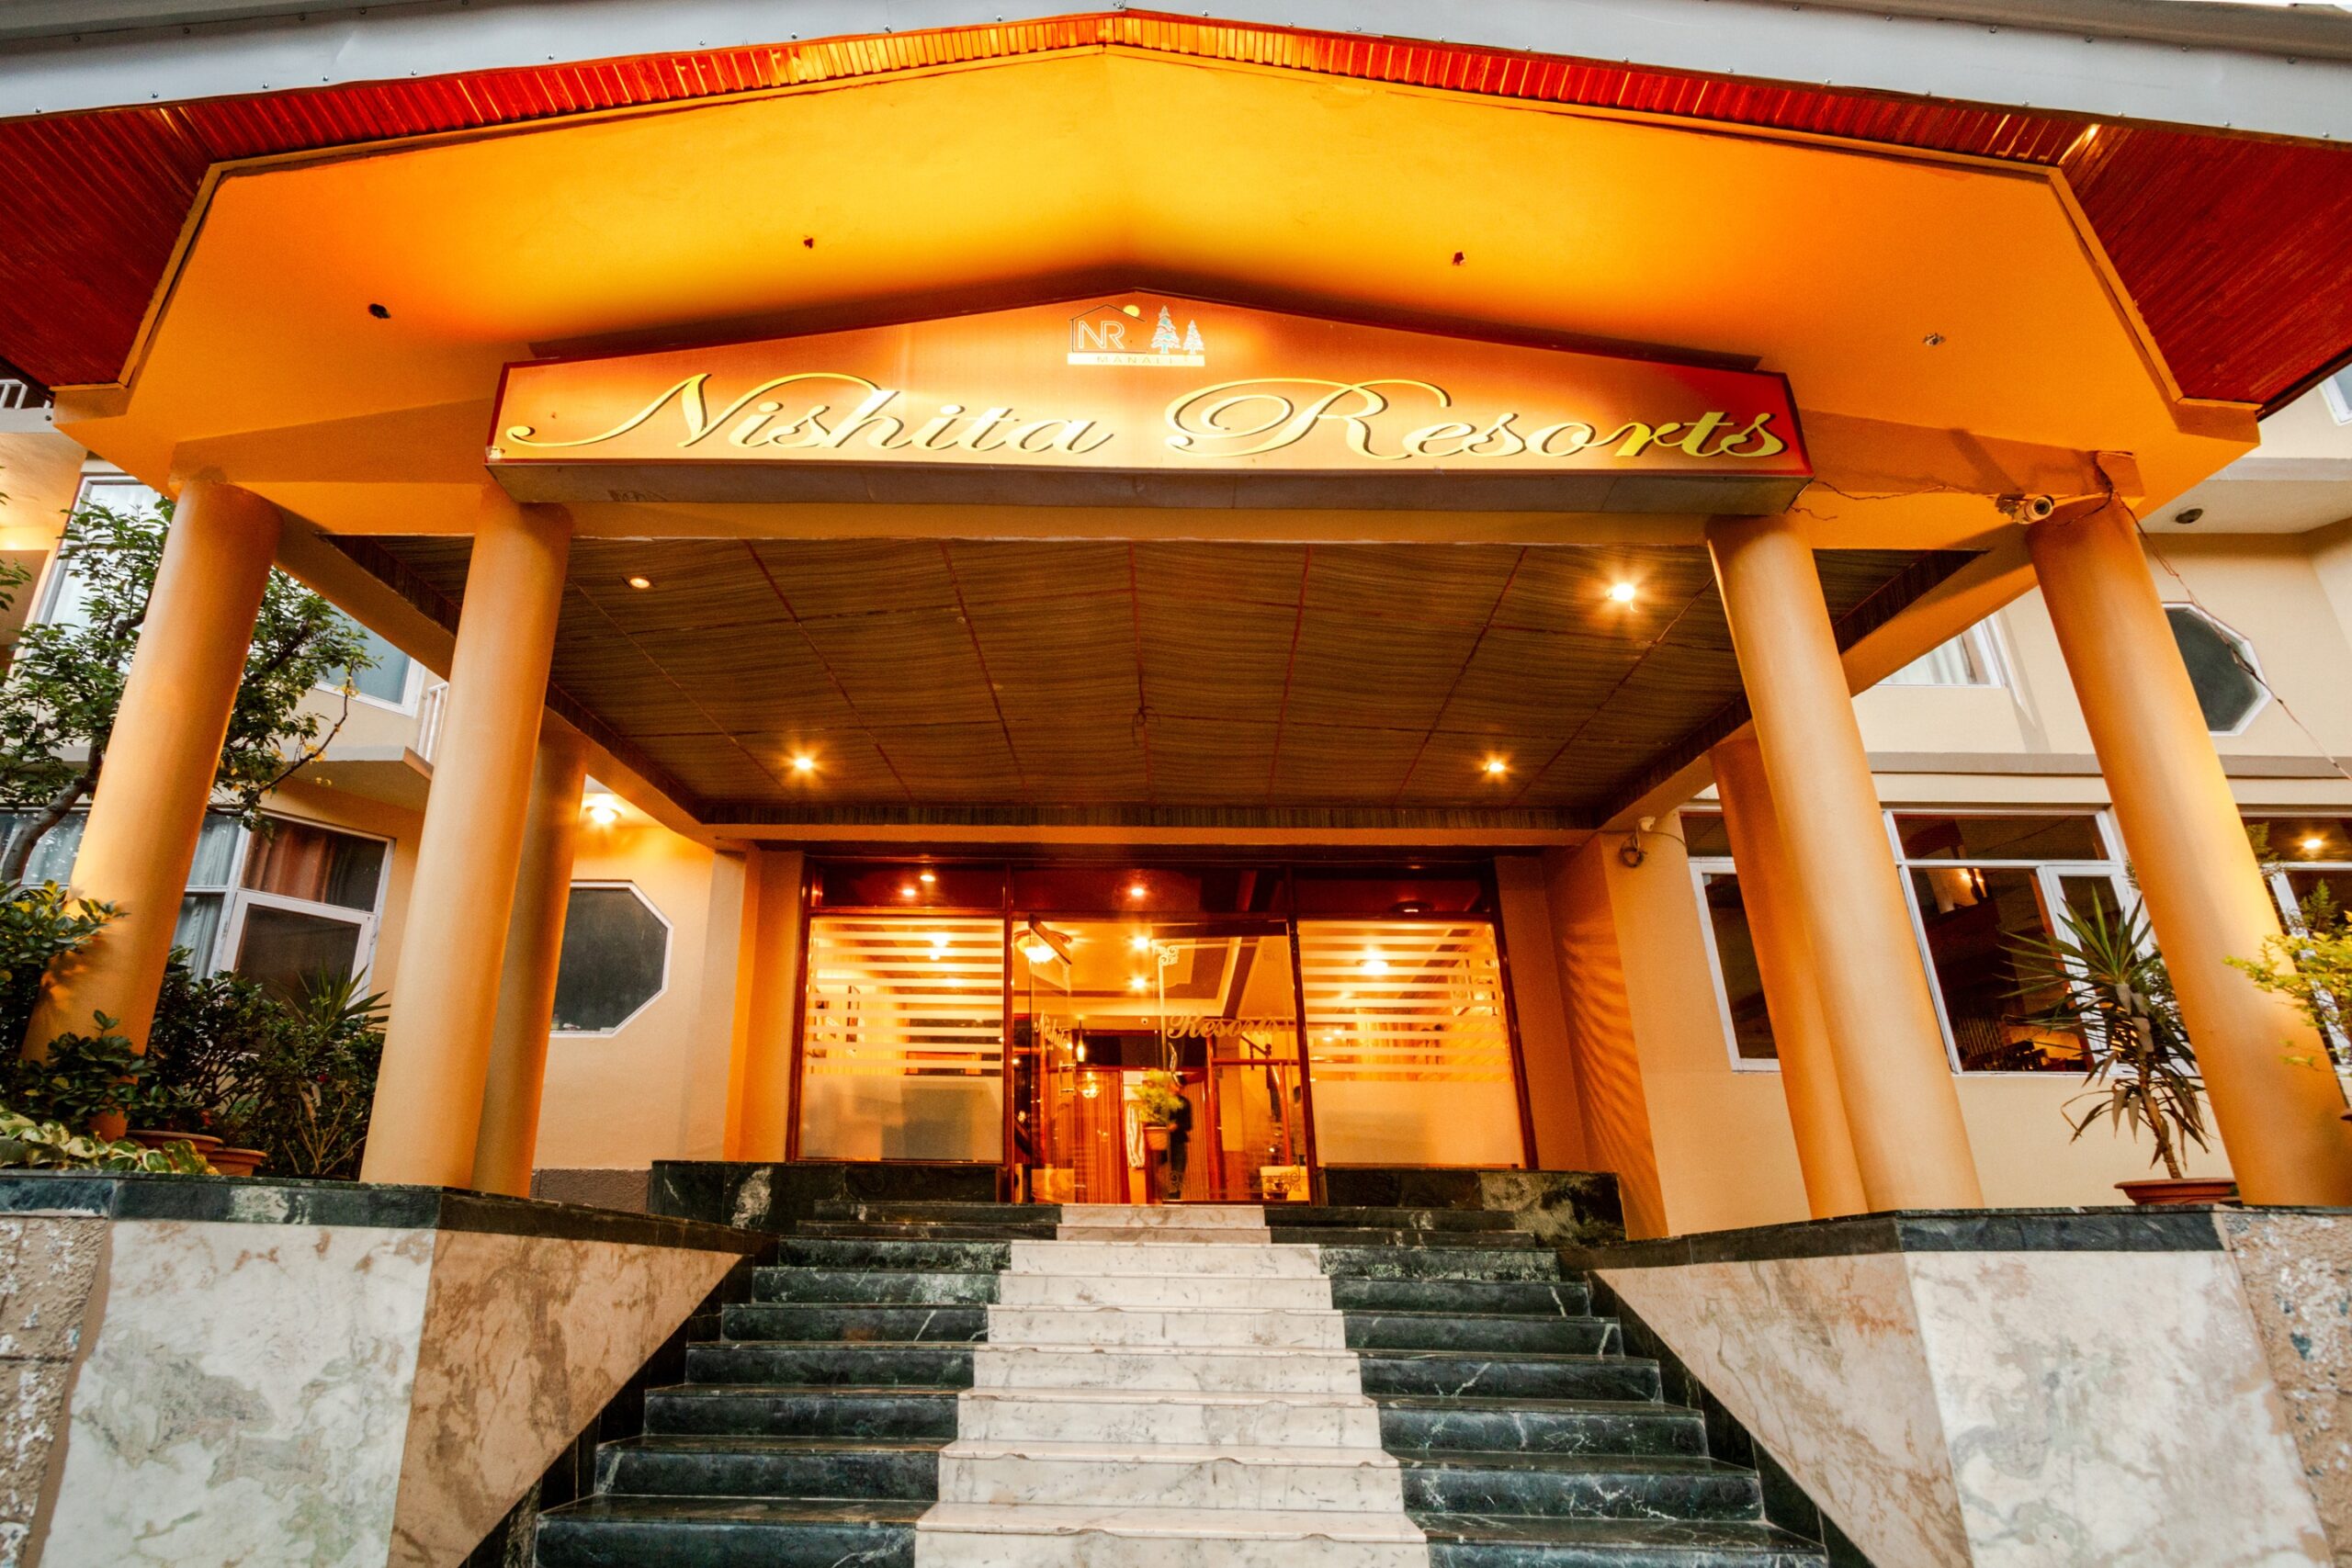 Hotel Nishita & Resorts, Manali